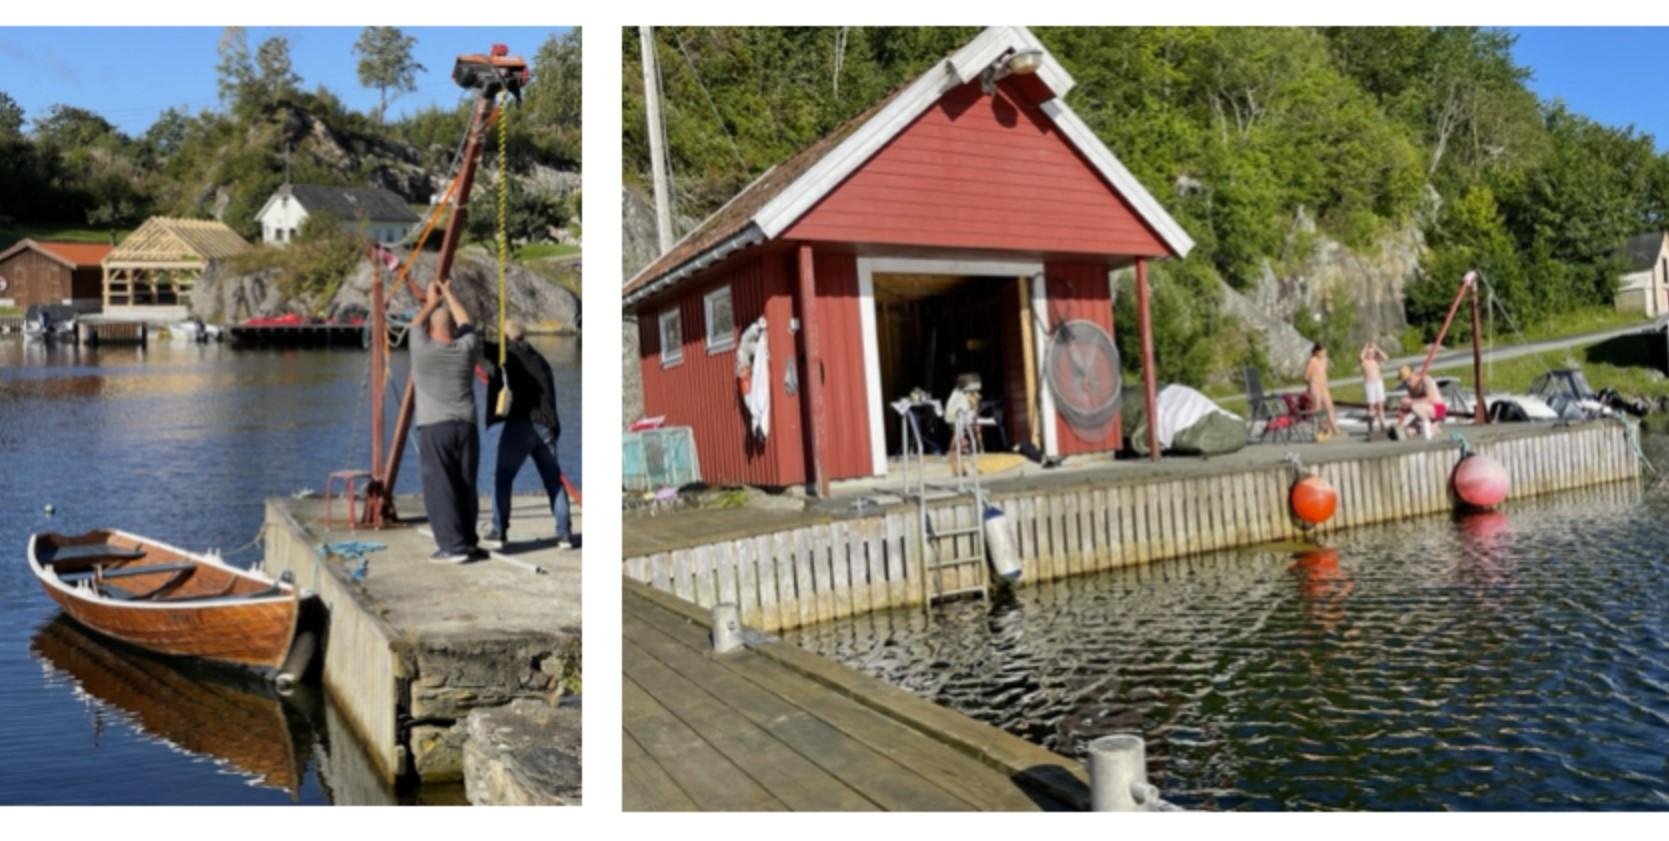 Her er illustrasjonen Pia Myrvold brukar for å annonsere utleige av «båtplasser ved historisk brygge til det tidligere handelsstedet i Sæbøvåg».